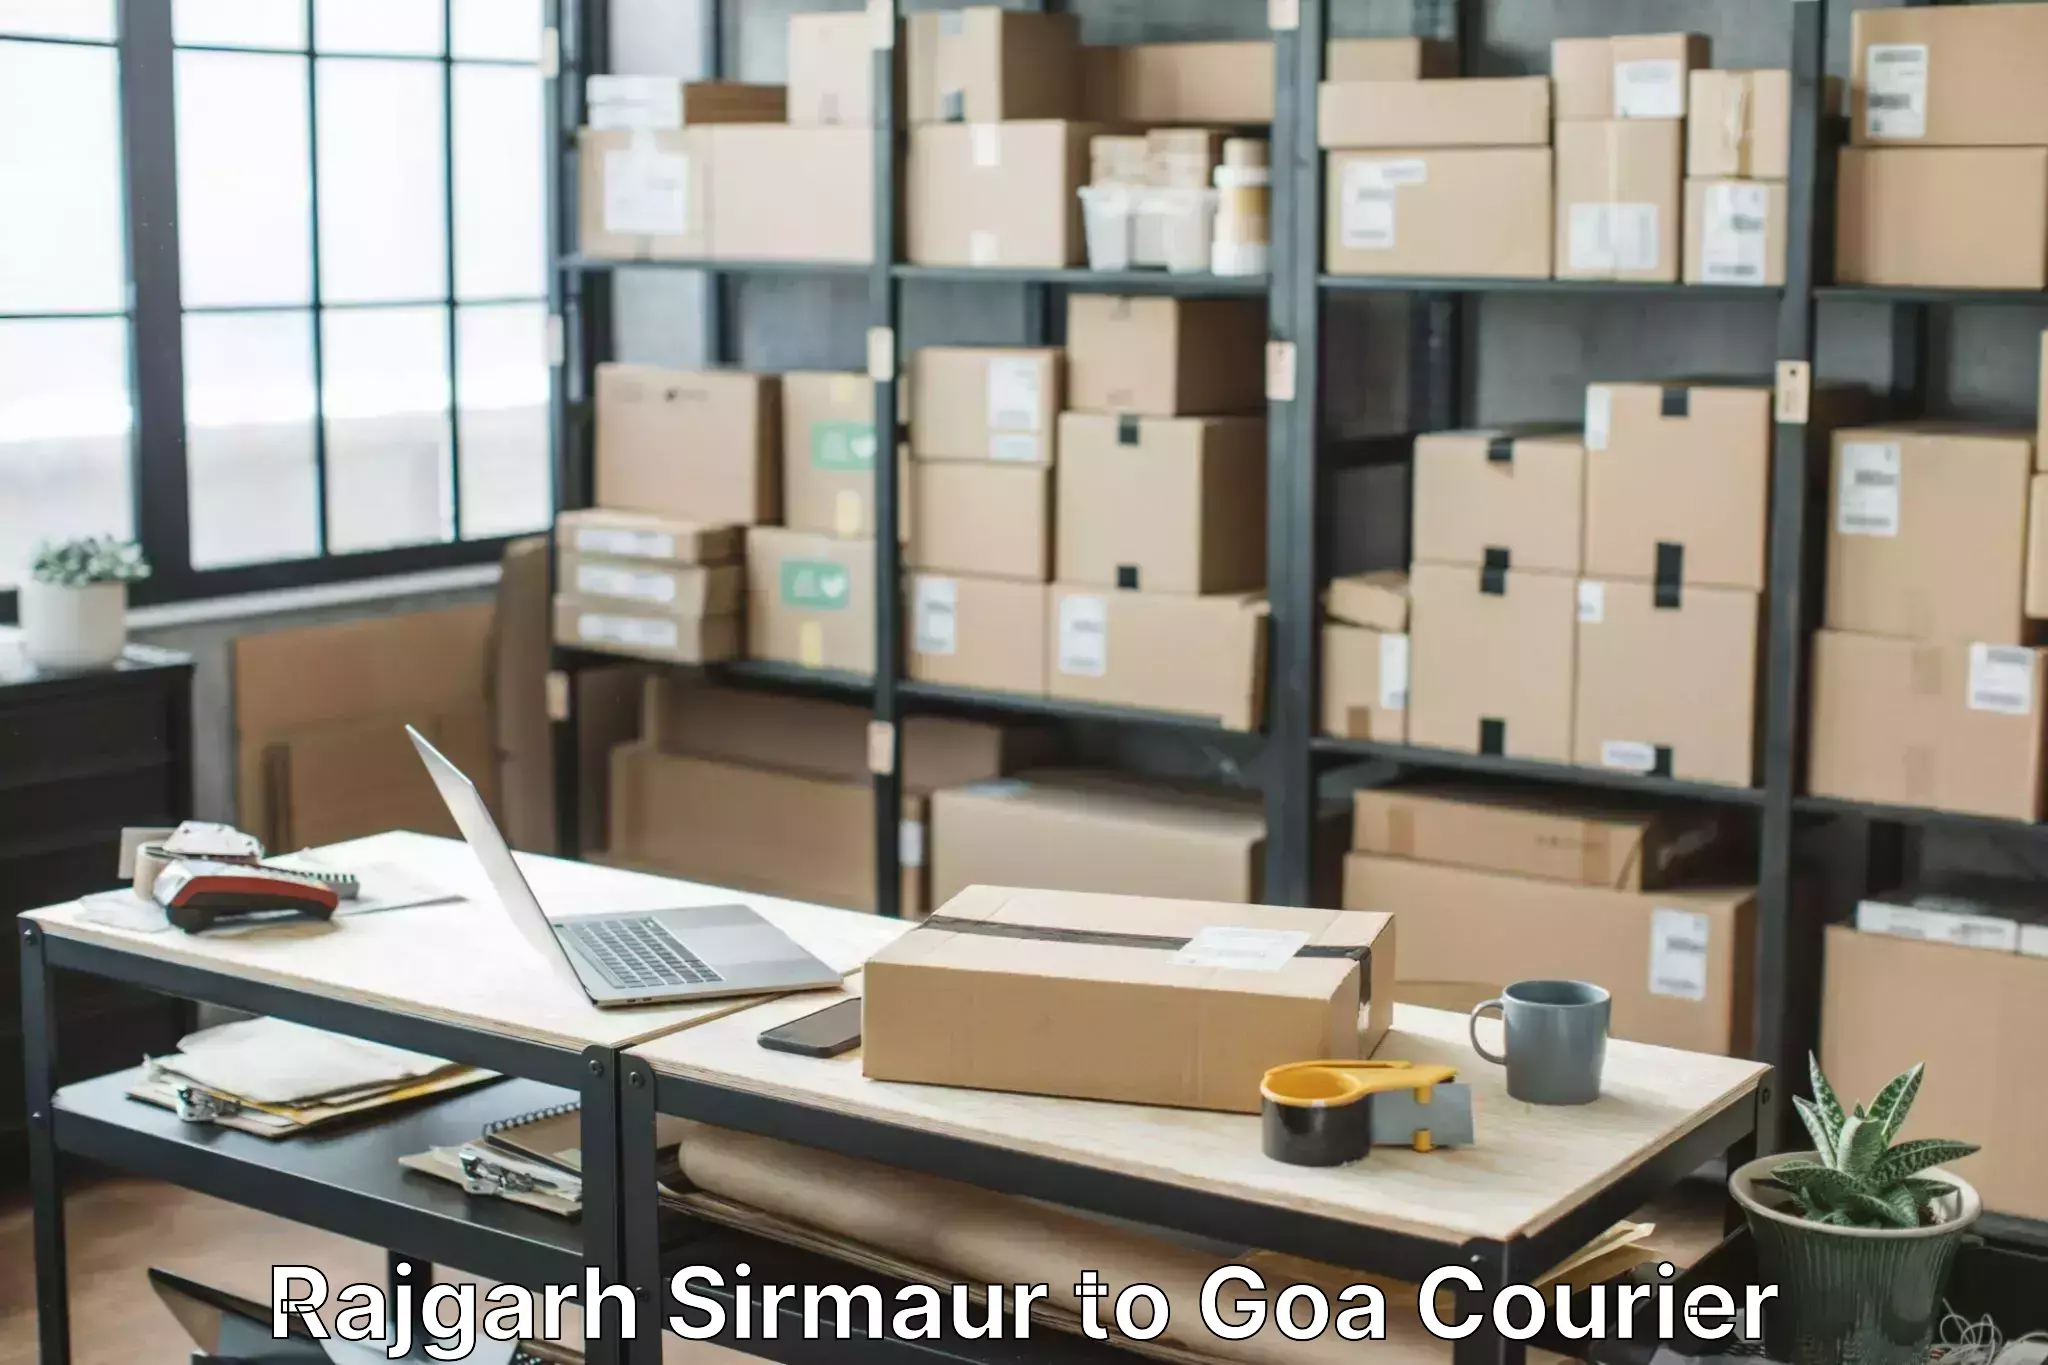 Furniture transport experts Rajgarh Sirmaur to Goa